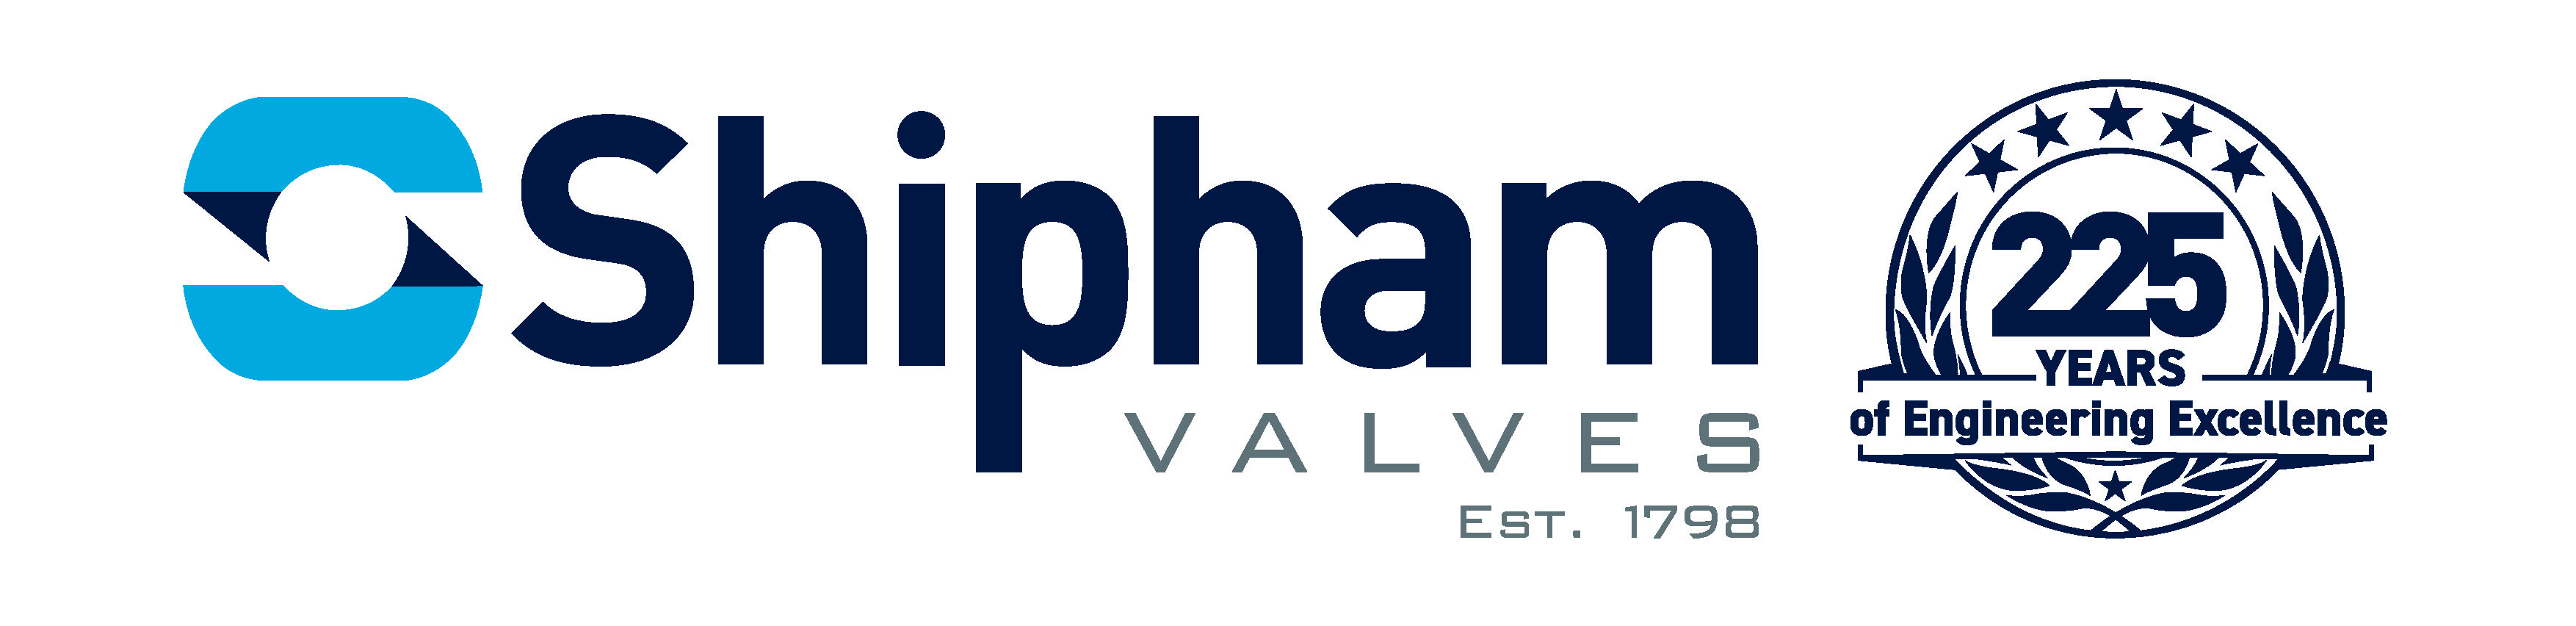 Shipham Valves Ltd